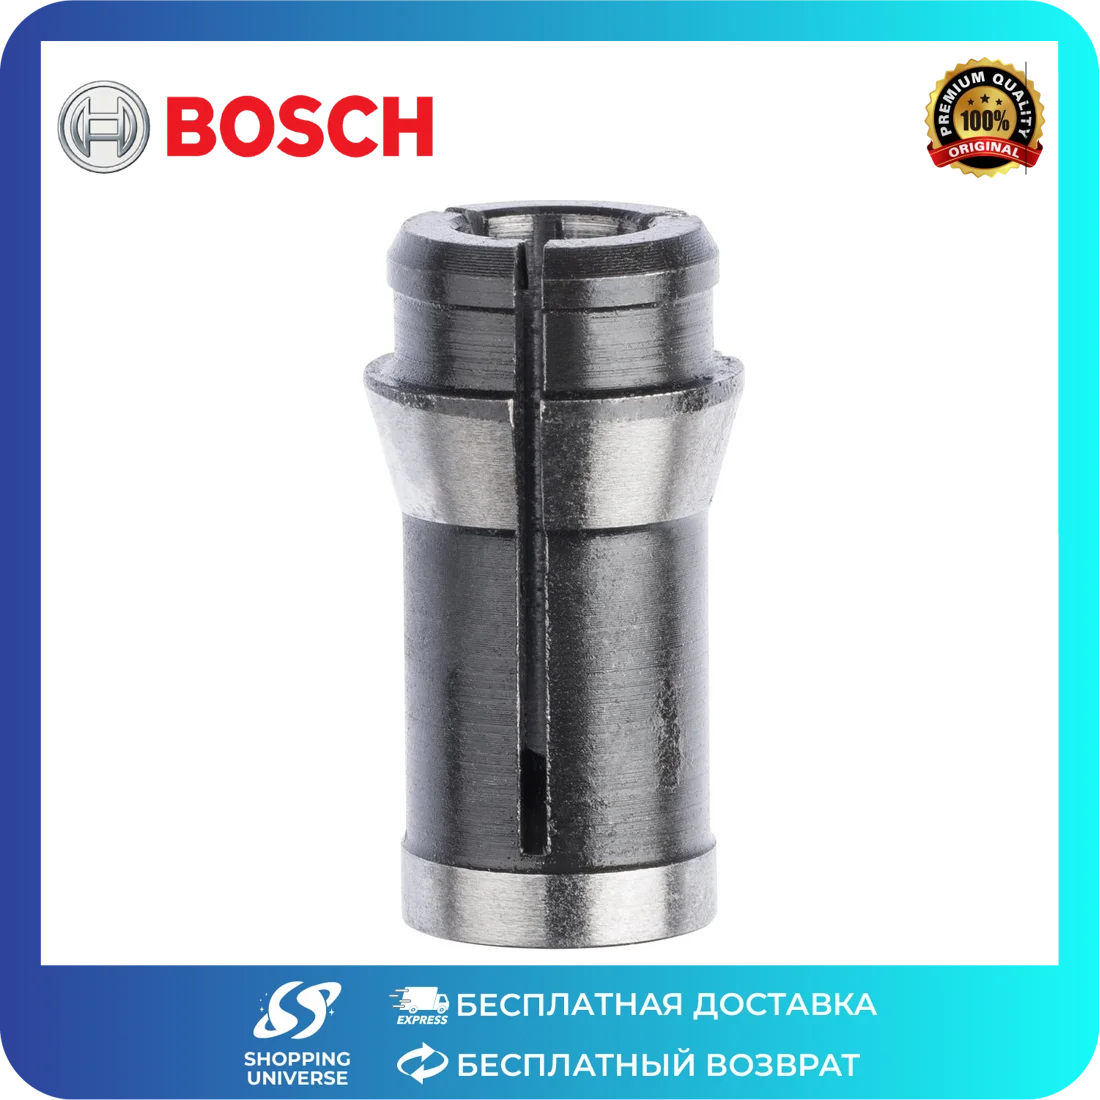 Цанга 3 мм. Цанга Bosch 6мм для GGS 28. Цанга бош 8 мм. Цанга для фрезера 8 мм Bosch. Цанга бош 8мм для фрезера.